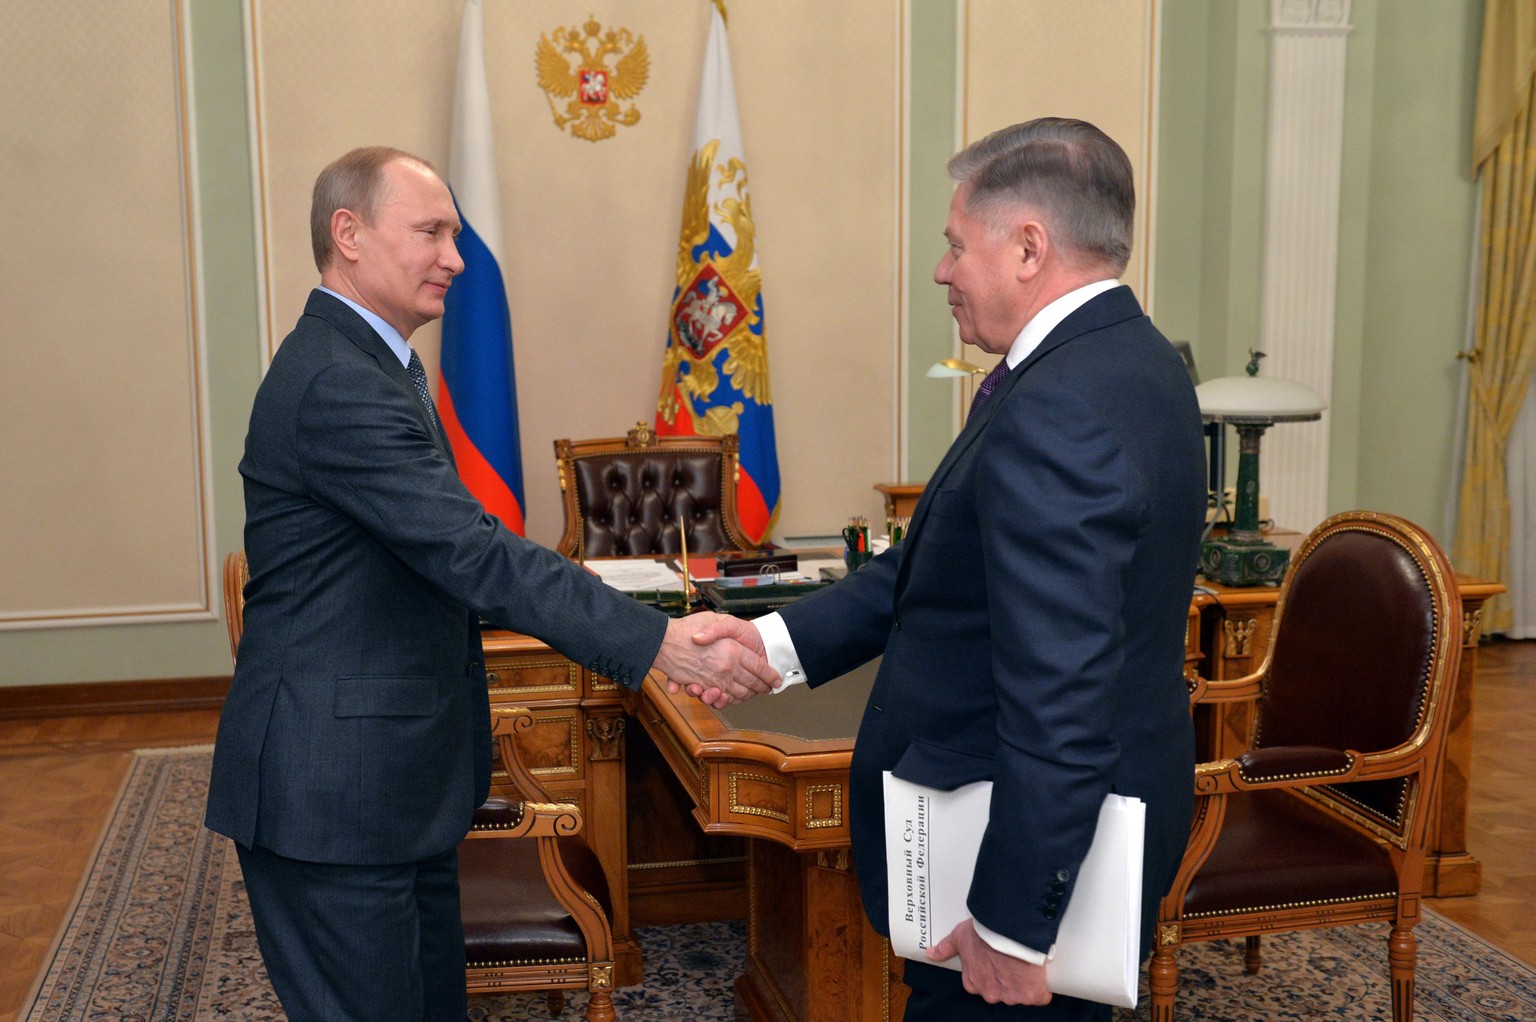 Angeblich aktuelle Bilder: Wladimir Putin mit dem Vorsitzenden des Obersten Verfassungsgerichts Vyacheslaw Lebedew am Freitag.